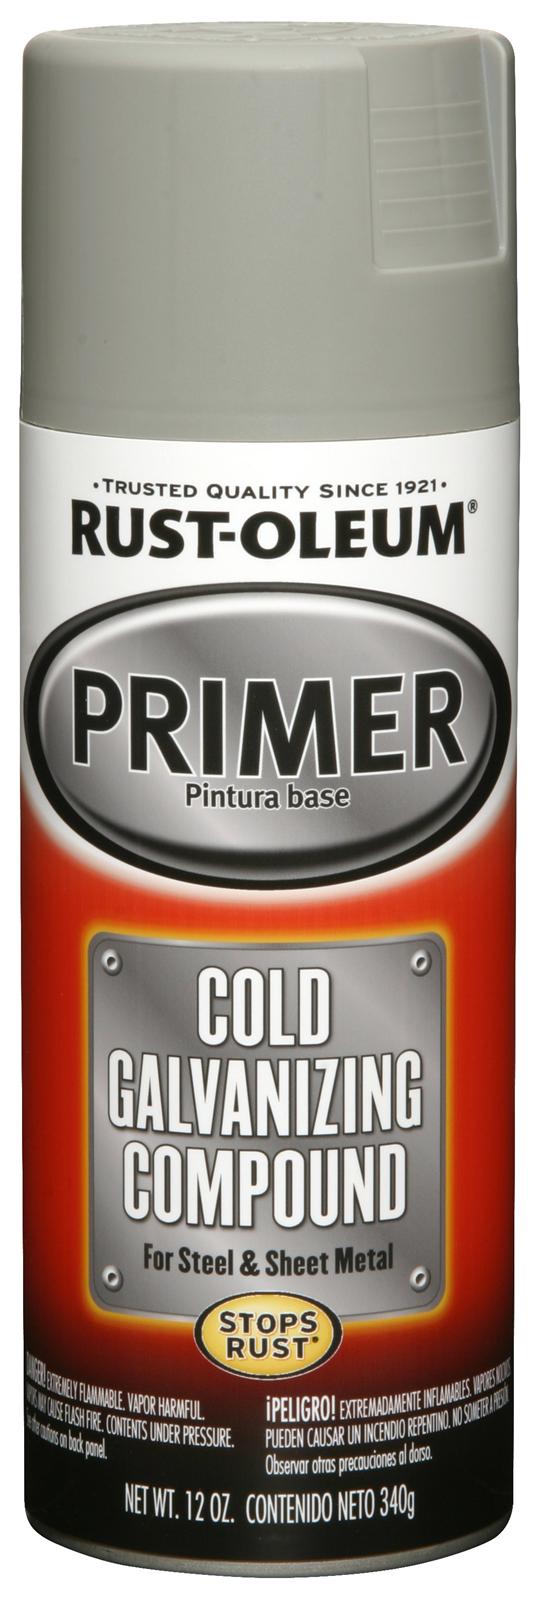 Rust-Oleum 12 oz. Spray de imprimación de compuesto galvanizado en frío gris